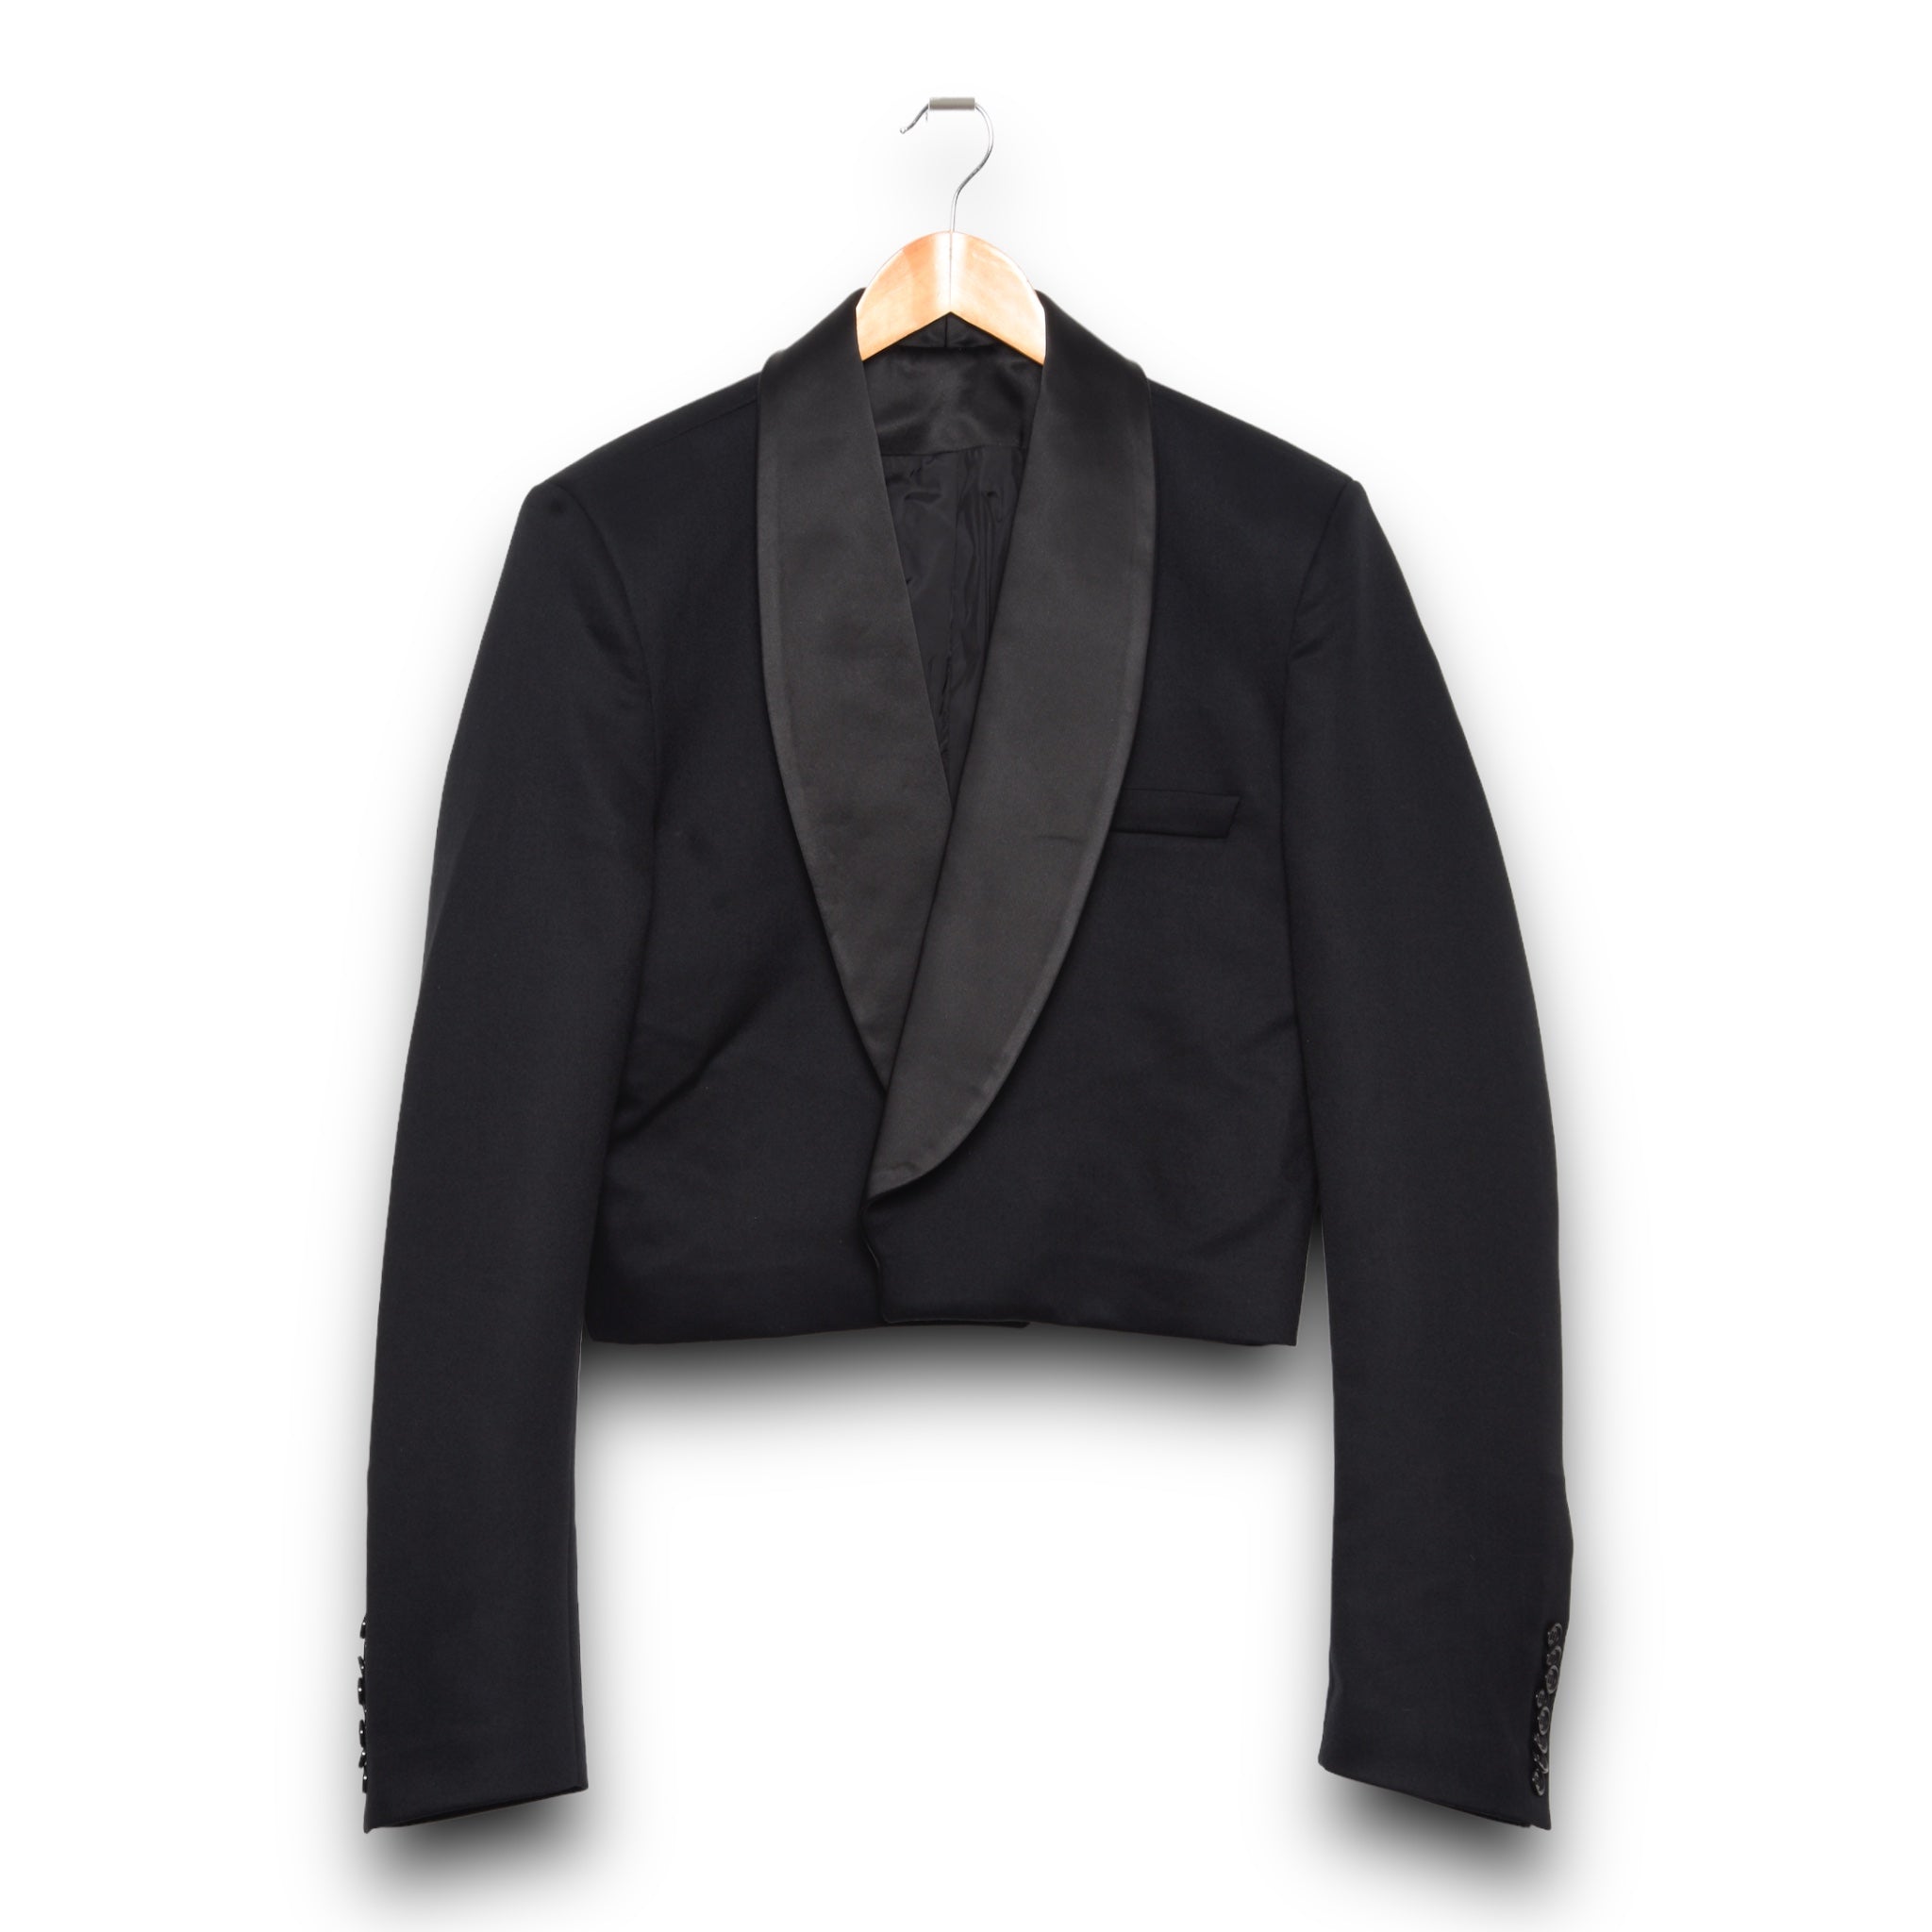 Mans Konomika Suit Jacket black